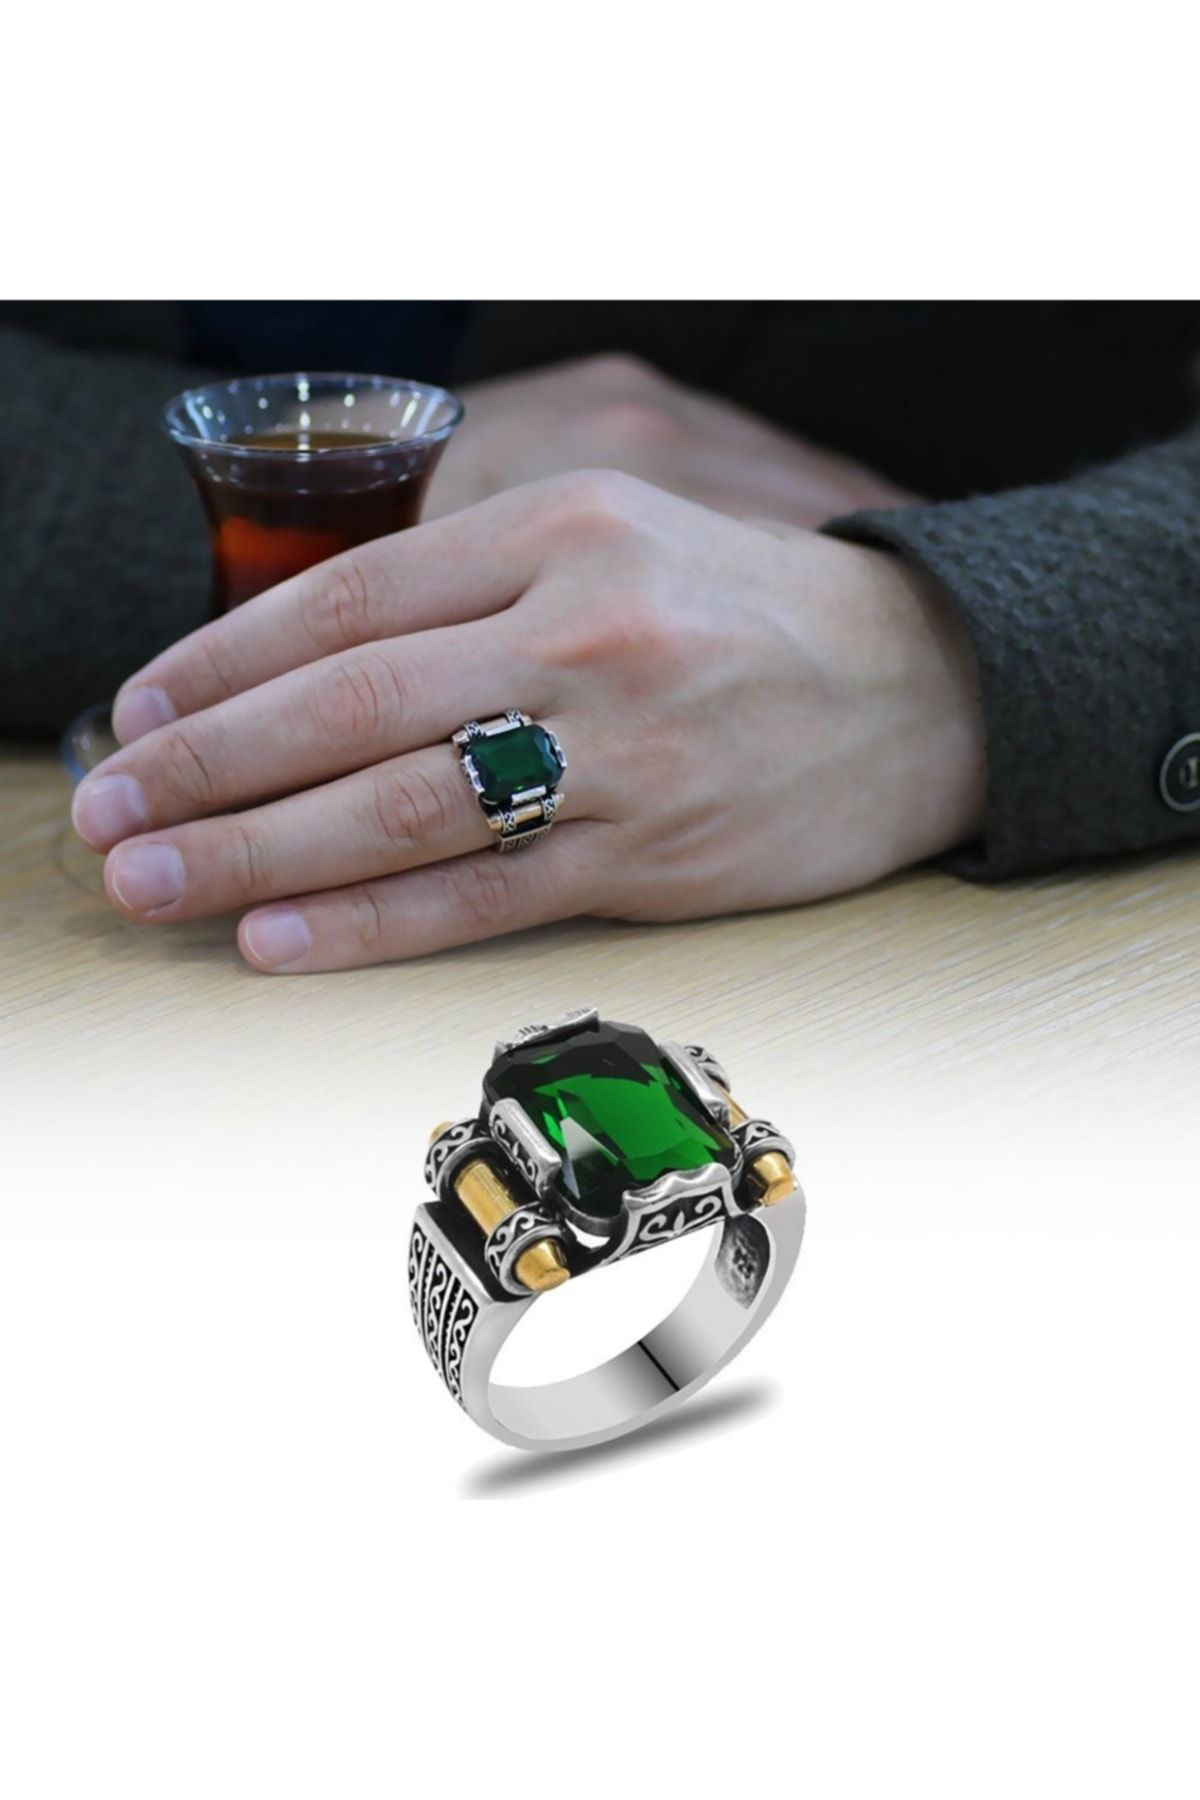 Tesbihane Yeşil Baget Taşlı Avangarde Tasarım 925 Ayar Gümüş "şah Cihan" Yüzüğü